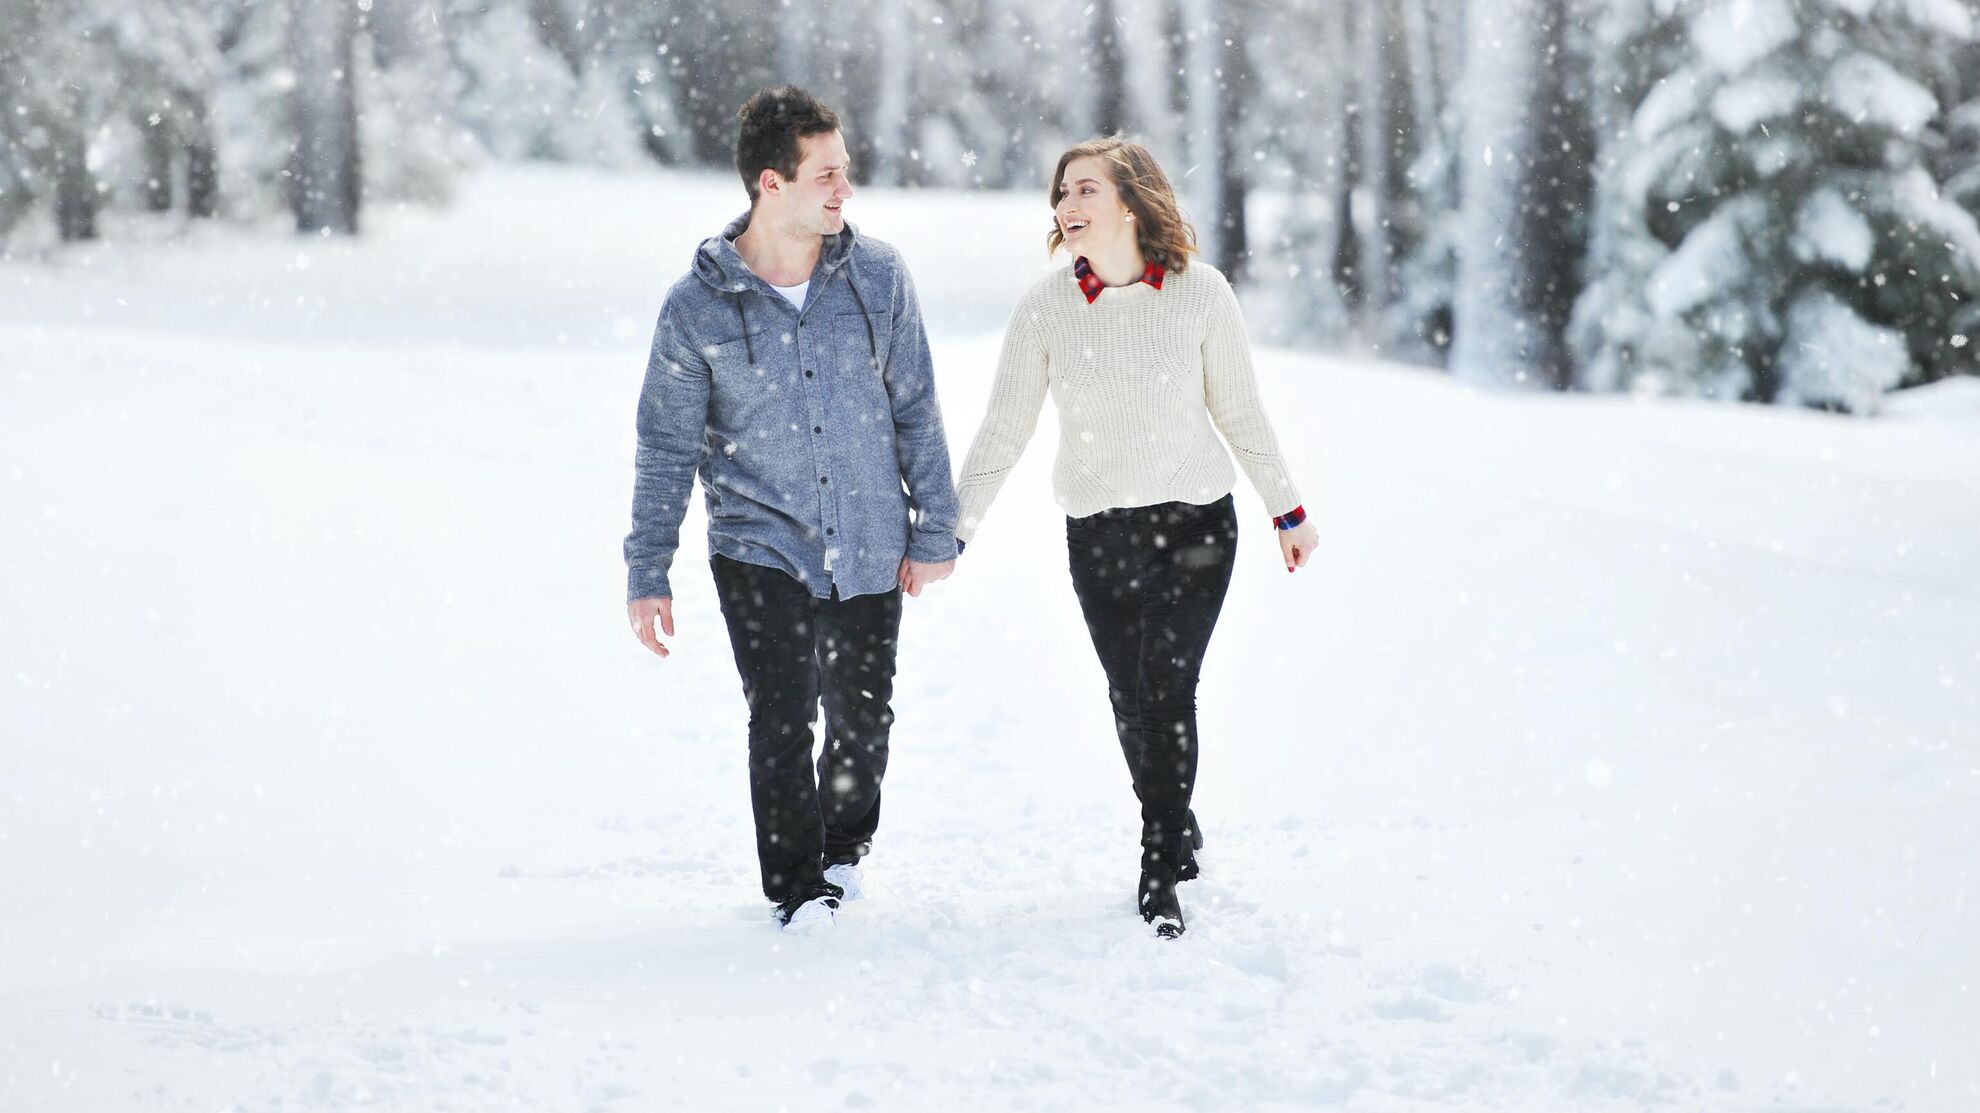 Стилист дала совет, как одеться женщинам на свидание зимой - News-hub.ru, 01.12.2023